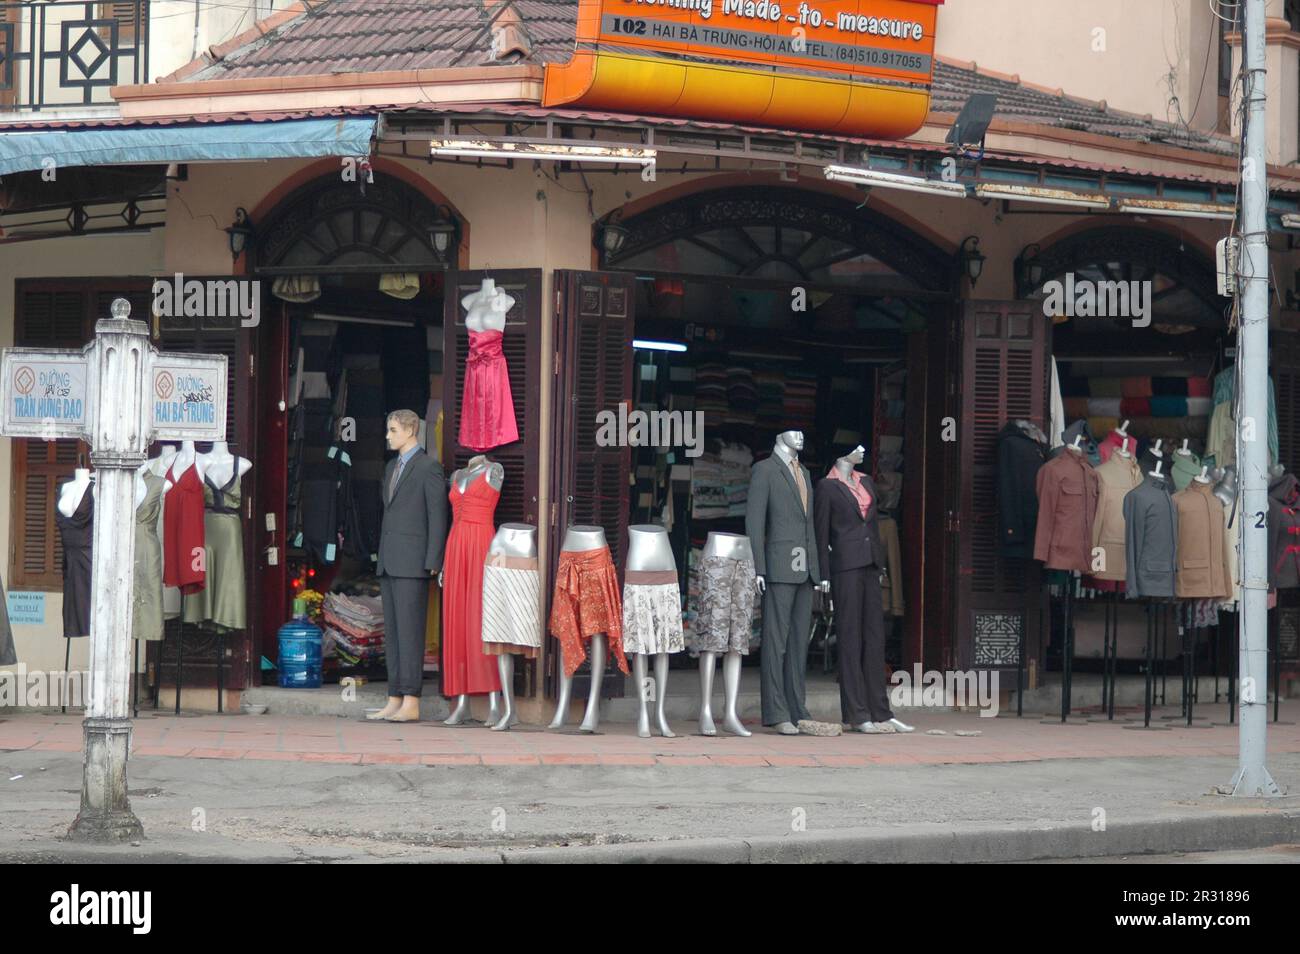 Famous tailor shops in Hoi An, An ancient town in Vietnam. 越南旅游, वियतनाम पर्यटन, 베트남 관광, ベトナム観光, ឌូលីច វៀតណាម Stock Photo